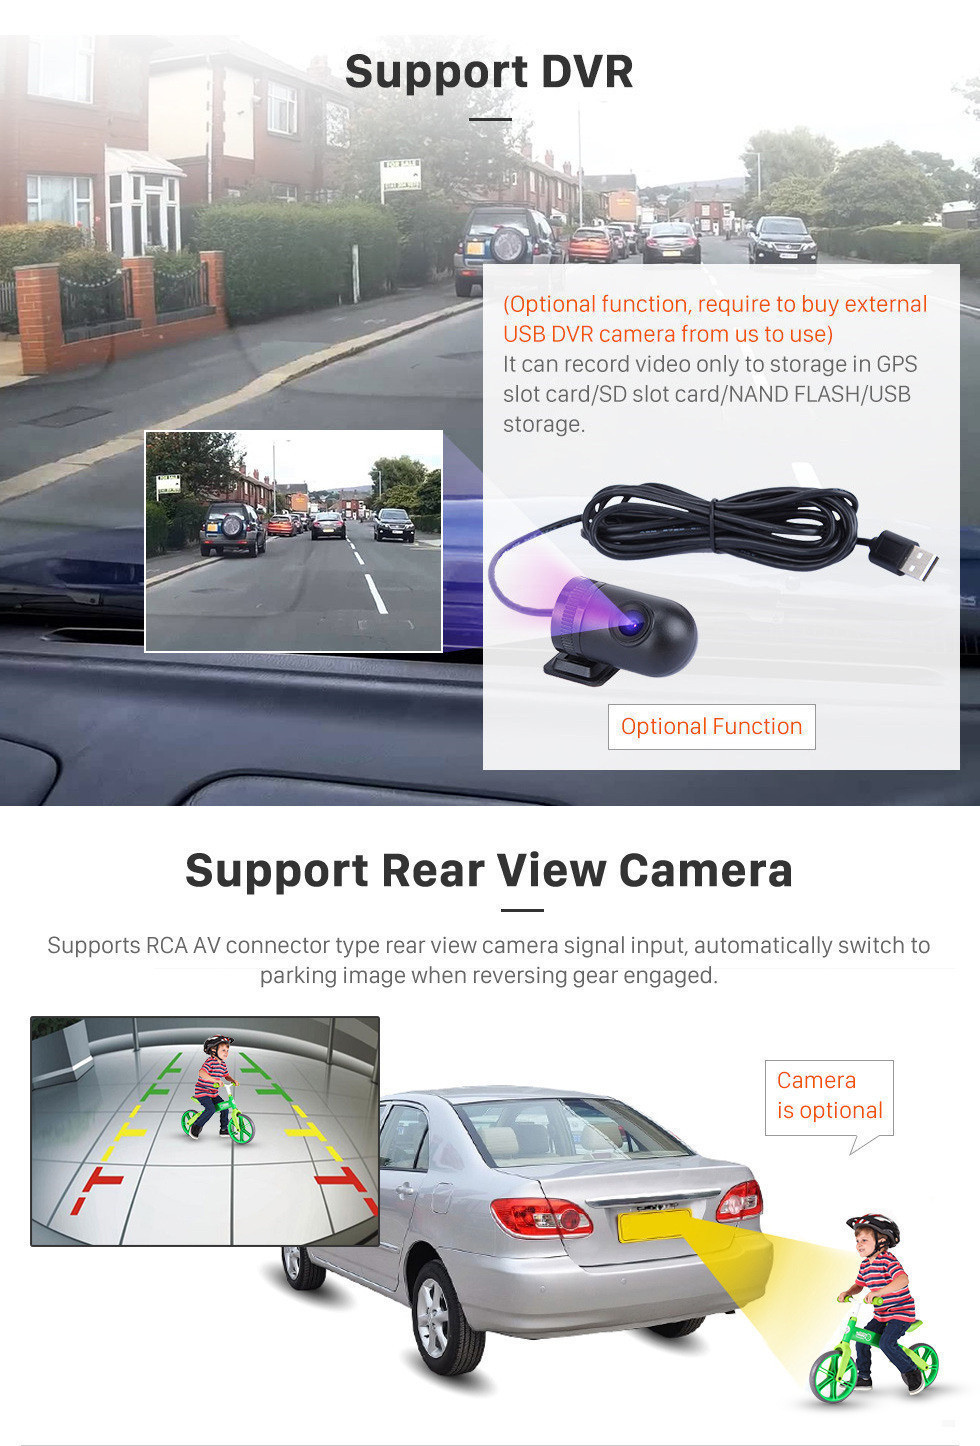 Seicane Rádio de reposição de 9 polegadas android 12.0 para 2000-2015 vw volkswagen crafter para leitor de dvd bluetooth música sistema de navegação gps estéreo do carro wi-fi espelho link hd 1080 p vídeo